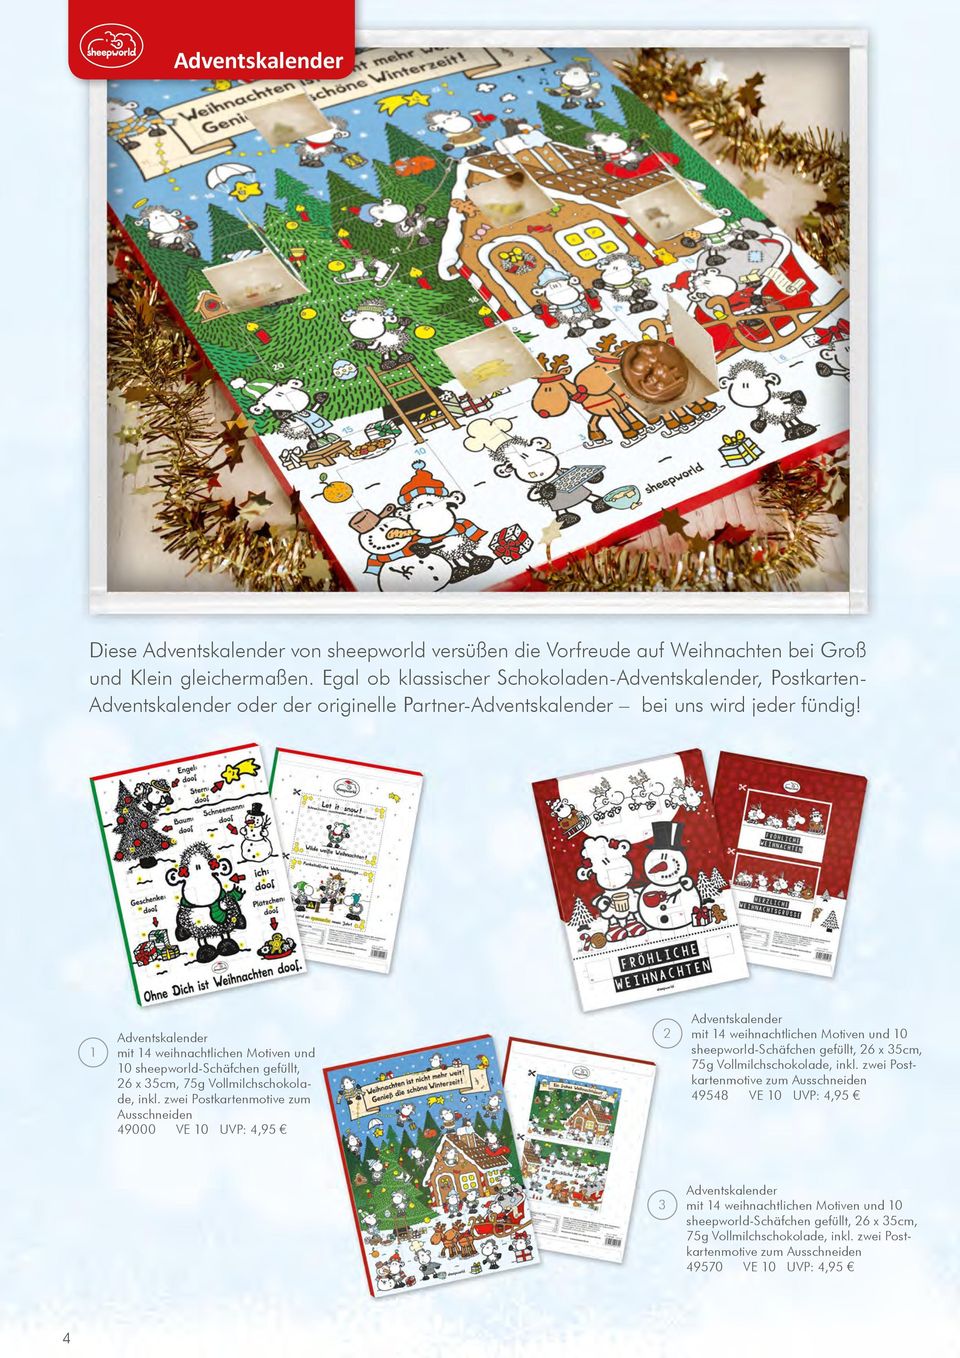 1 Adventskalender mit 14 weihnachtlichen Motiven und 10 sheepworld-schäfchen gefüllt, 26 x 35cm, 75g Vollmilchschokolade, inkl.